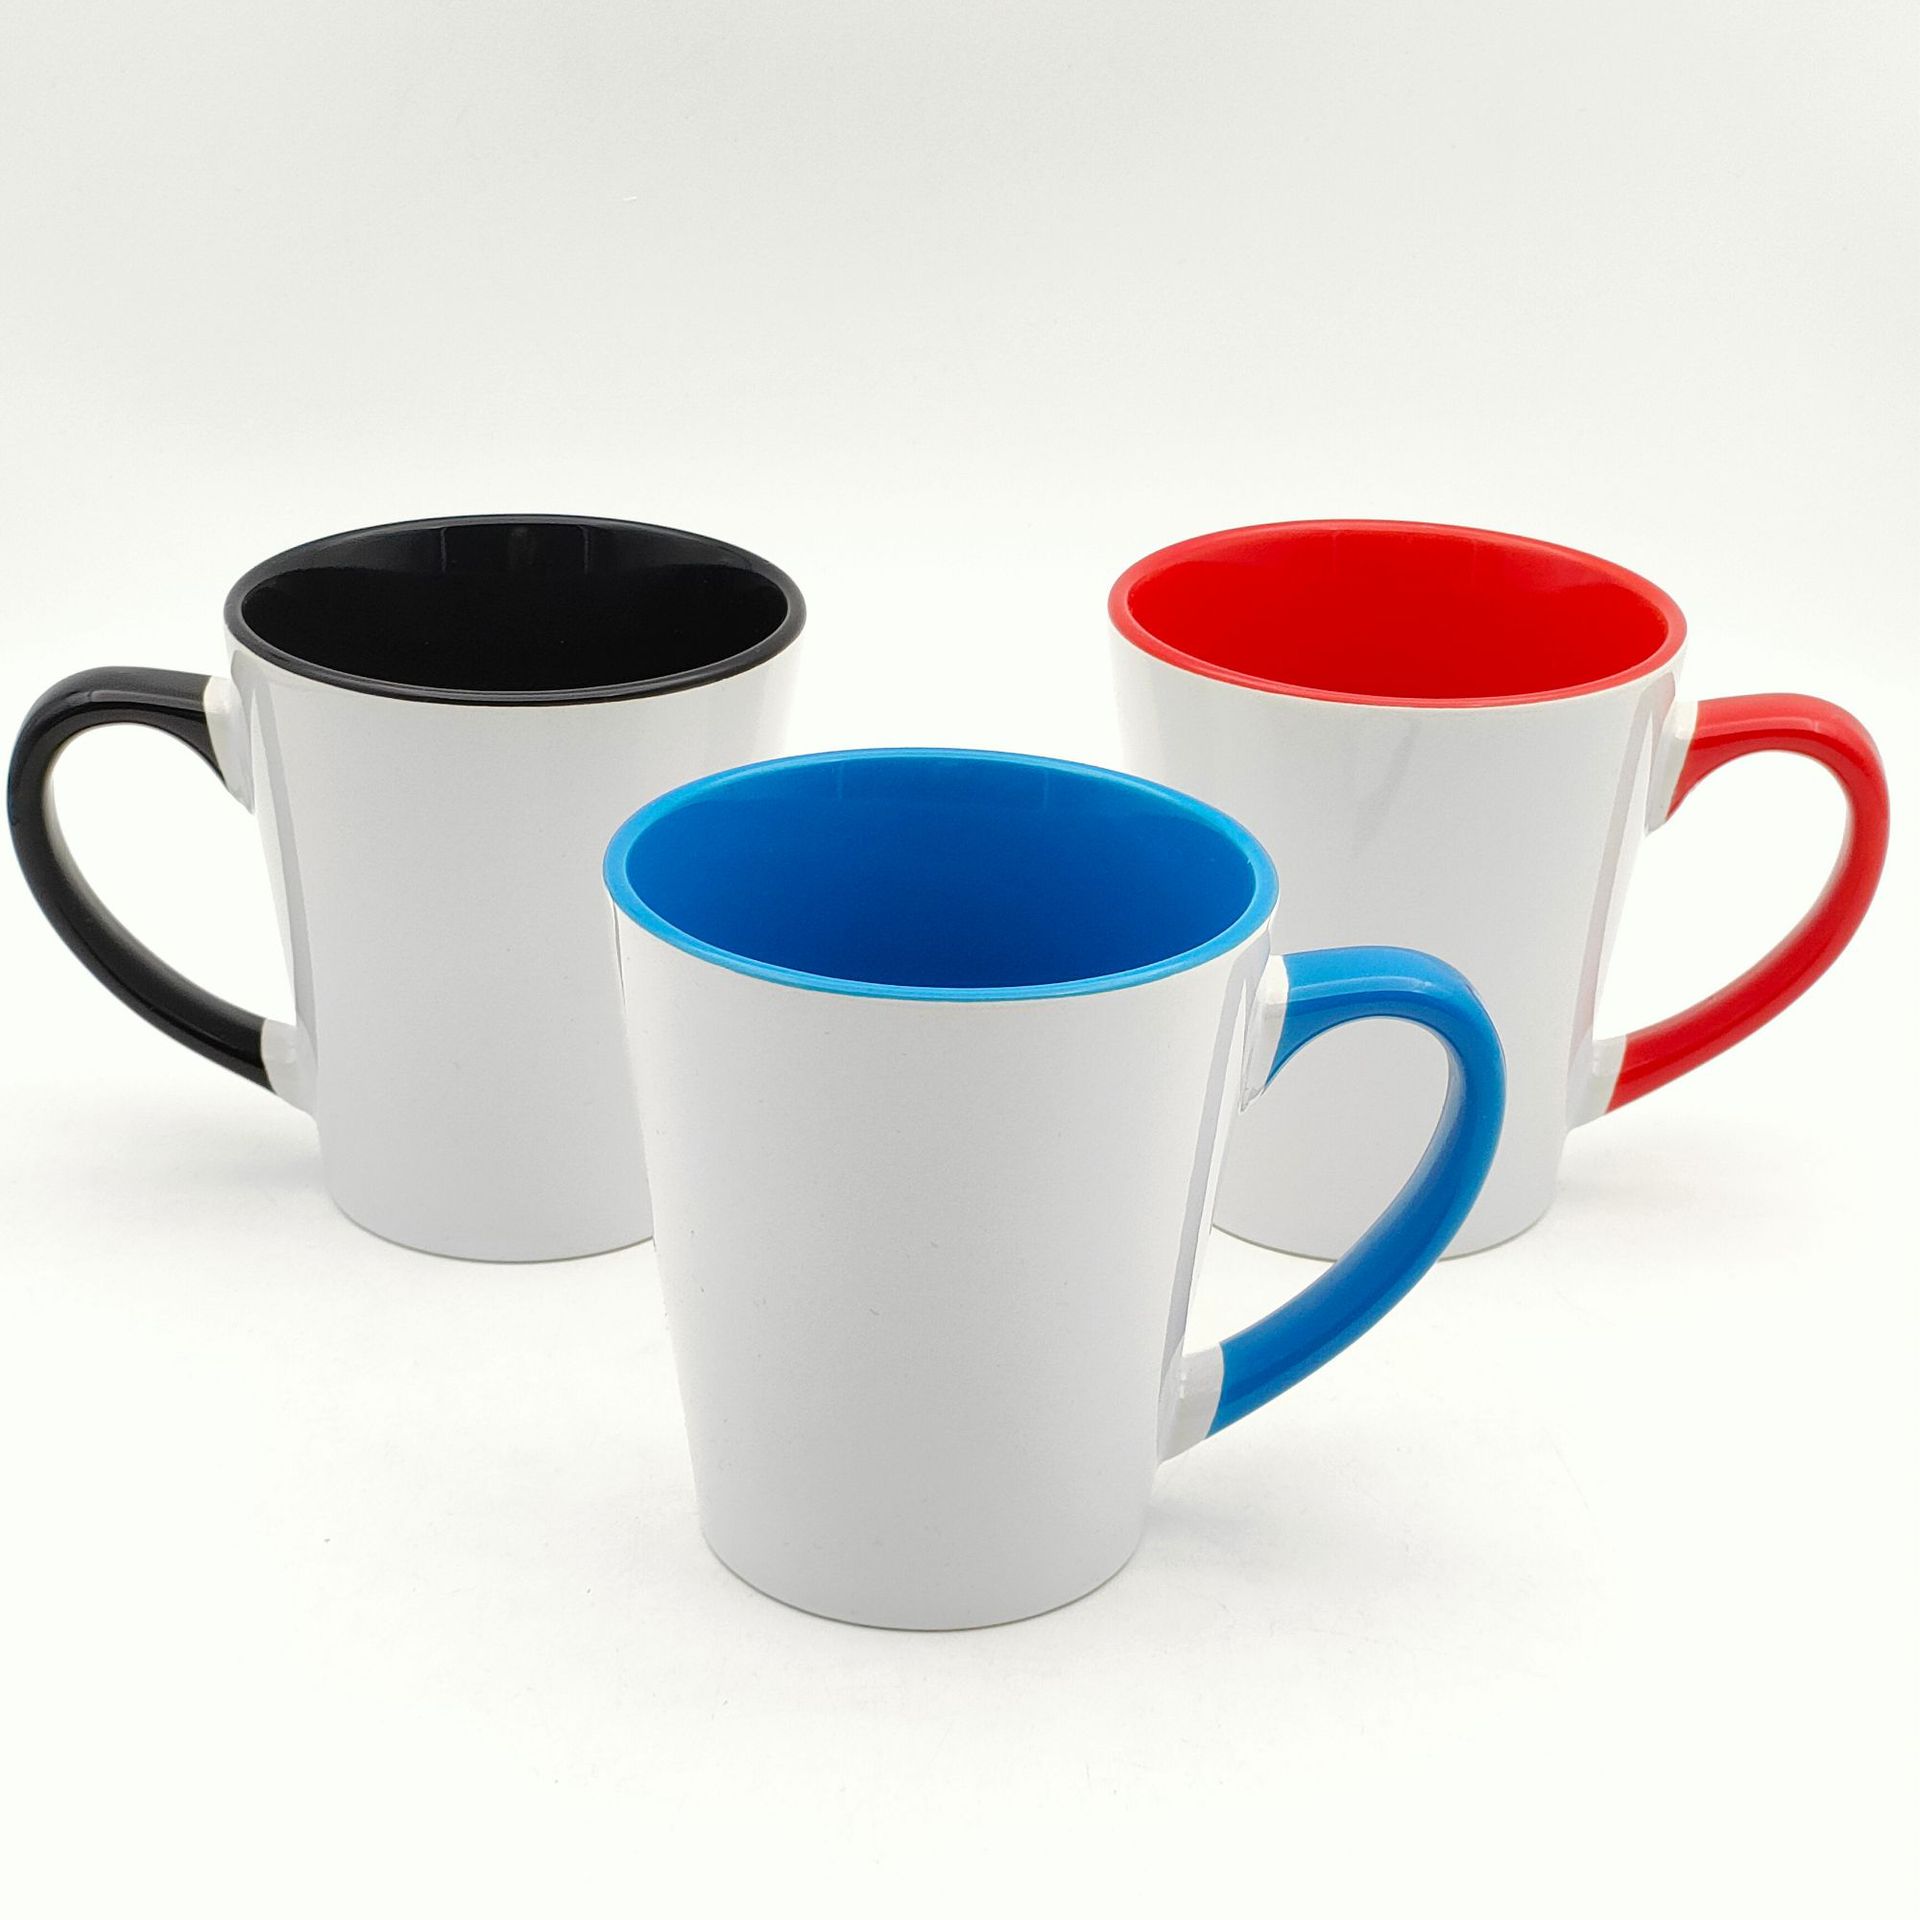 内彩外白漏斗型陶瓷杯 大口径V型马克杯定 制Logo咖啡广告水杯